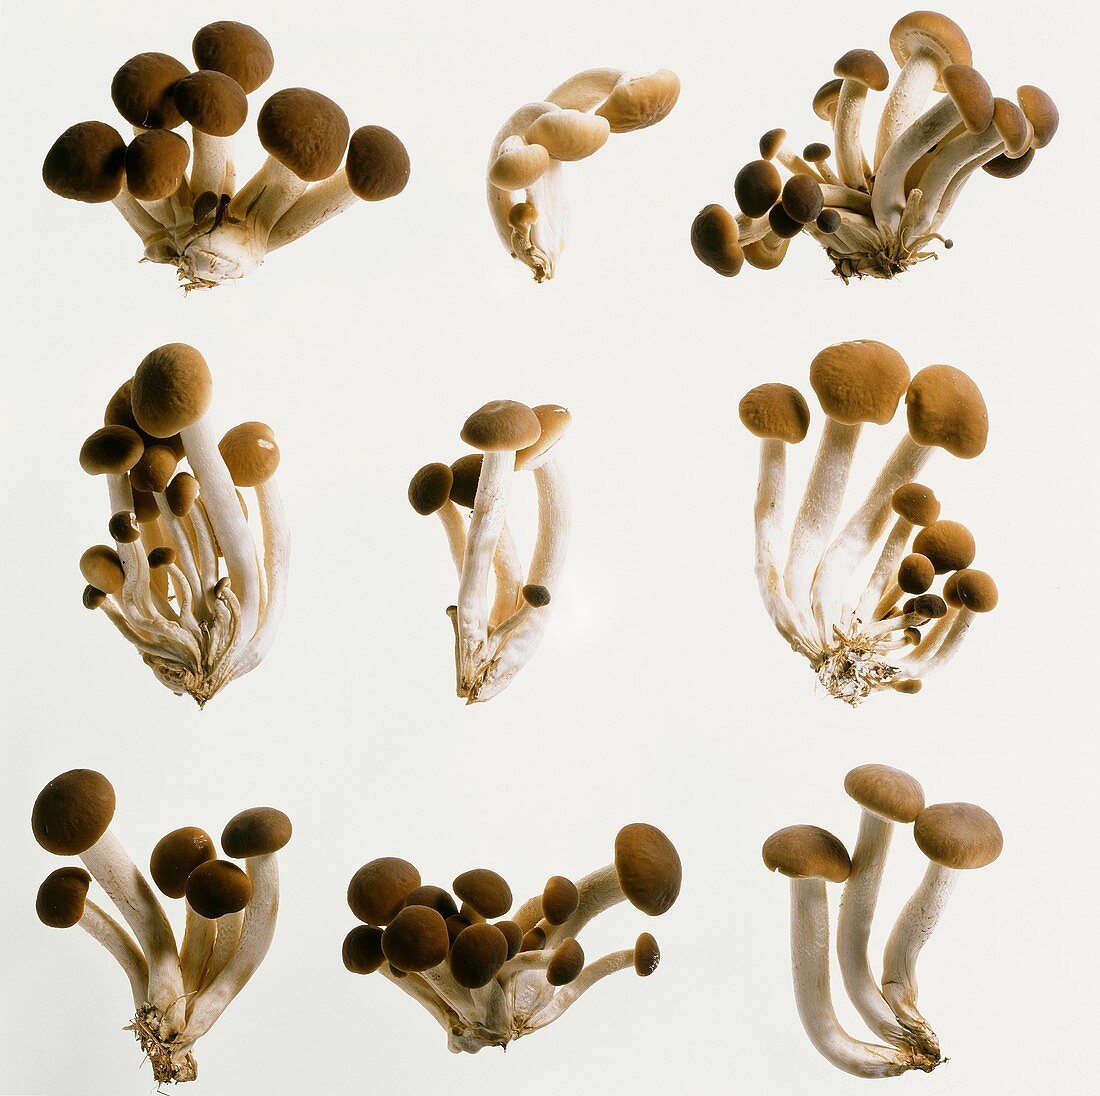 Hallimasch-Pilze auf weißem Untergrund